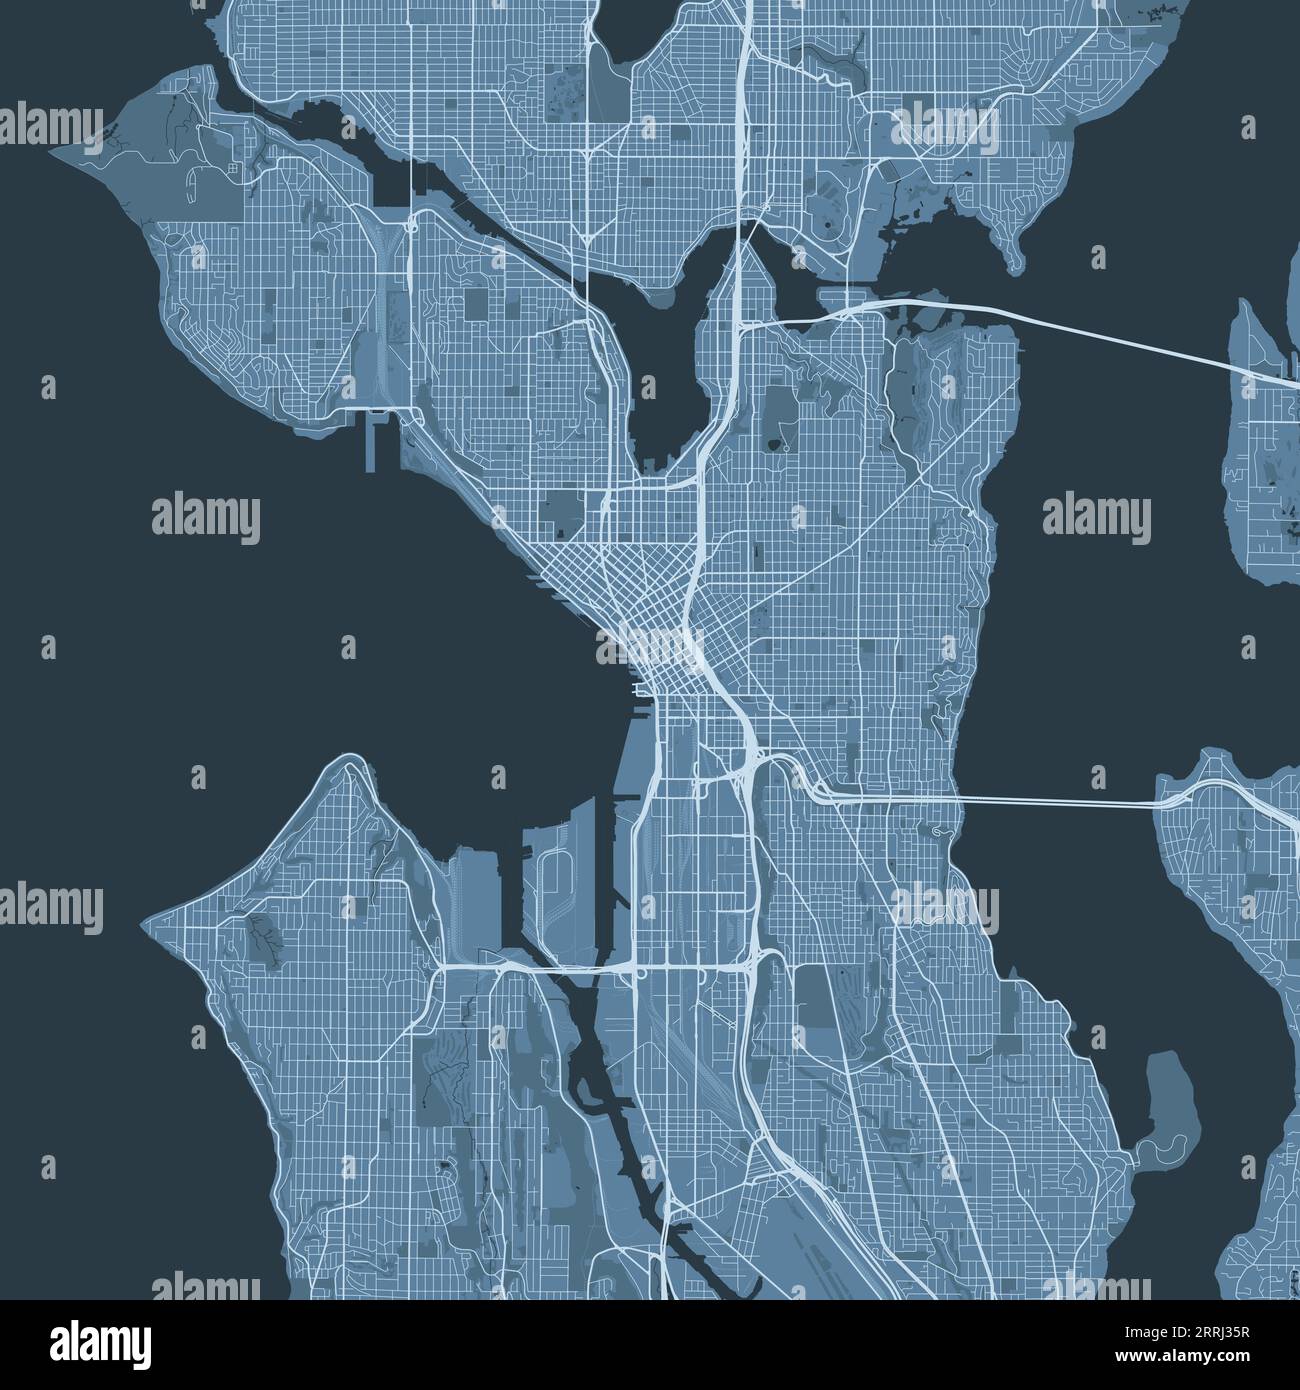 Mappa blu di Seattle, Stati Uniti, mappa dettagliata del comune, panorama dello skyline. Mappa turistica grafica decorativa del territorio di Seattle. Vettore privo di royalty Illustrazione Vettoriale